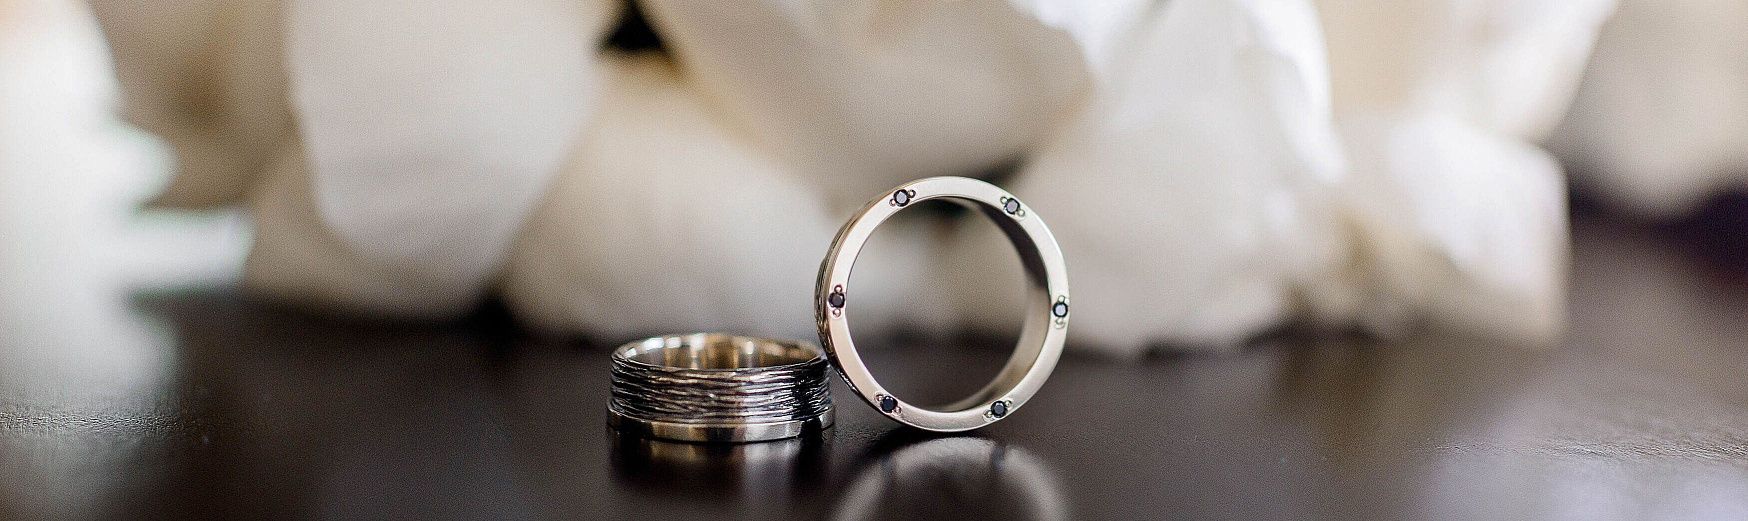 Обручальные необычные кольца с узорами